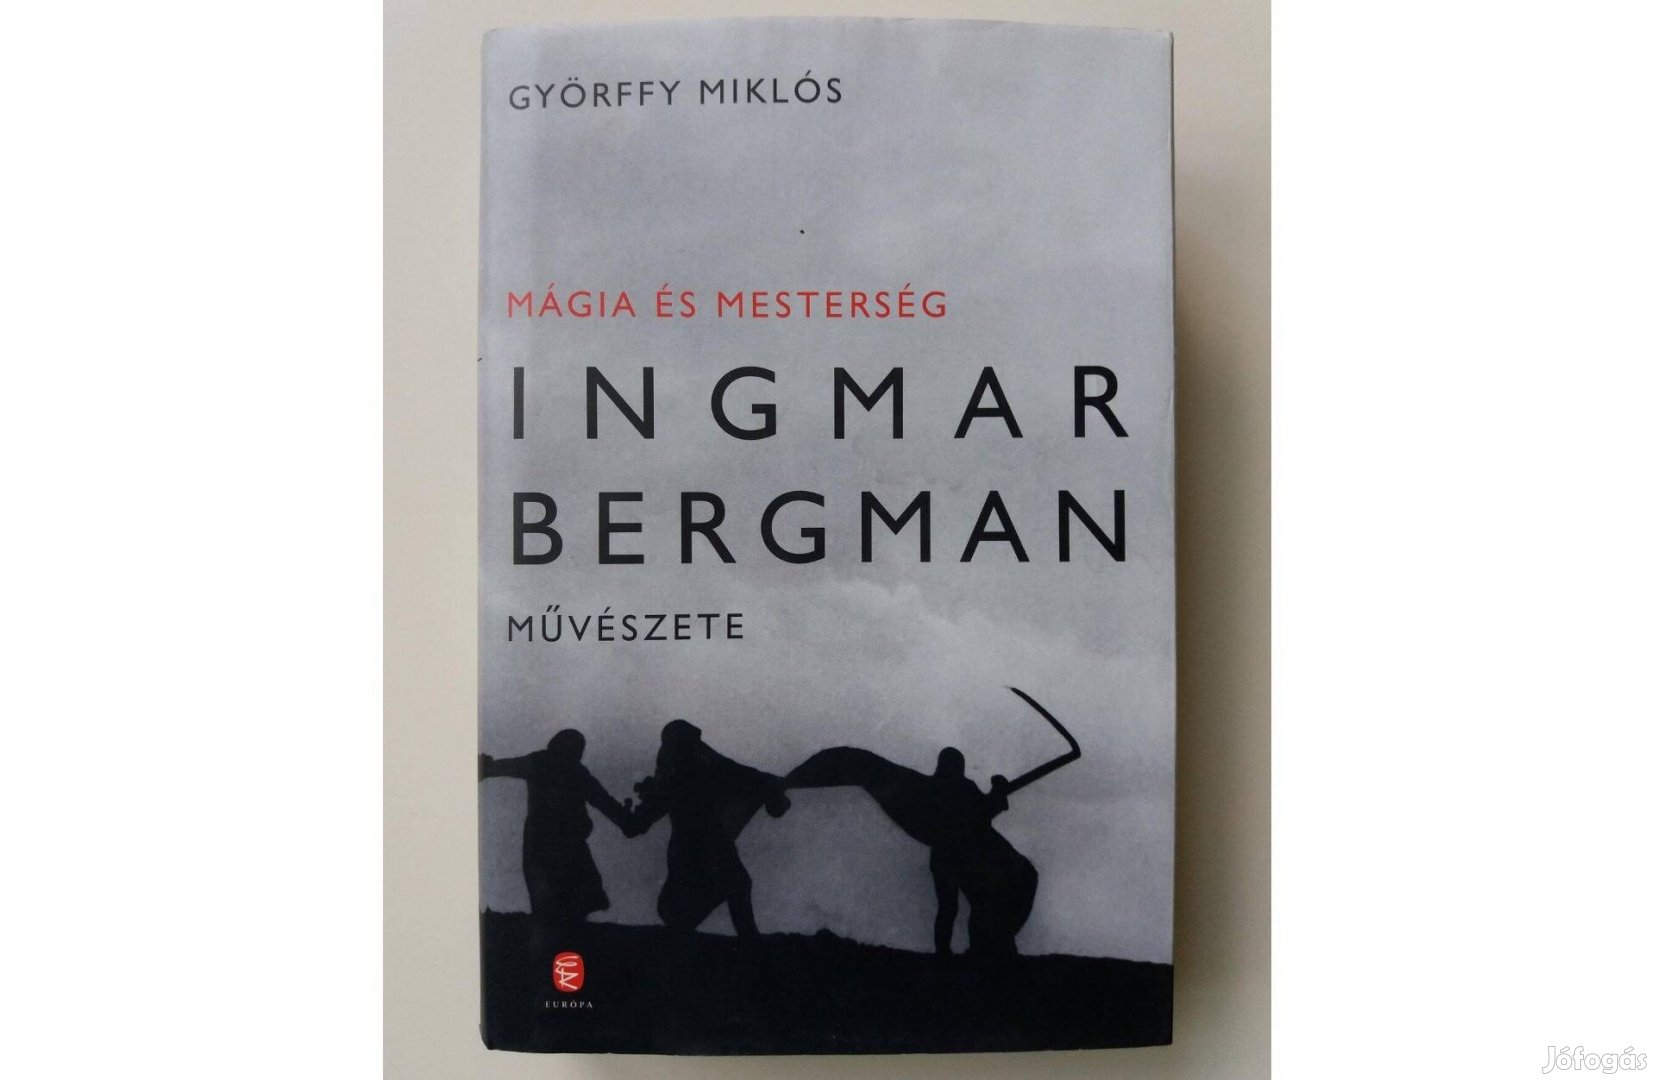 Györffy Miklós: Mágia és mesterség (Ingmar Bergman művészete)